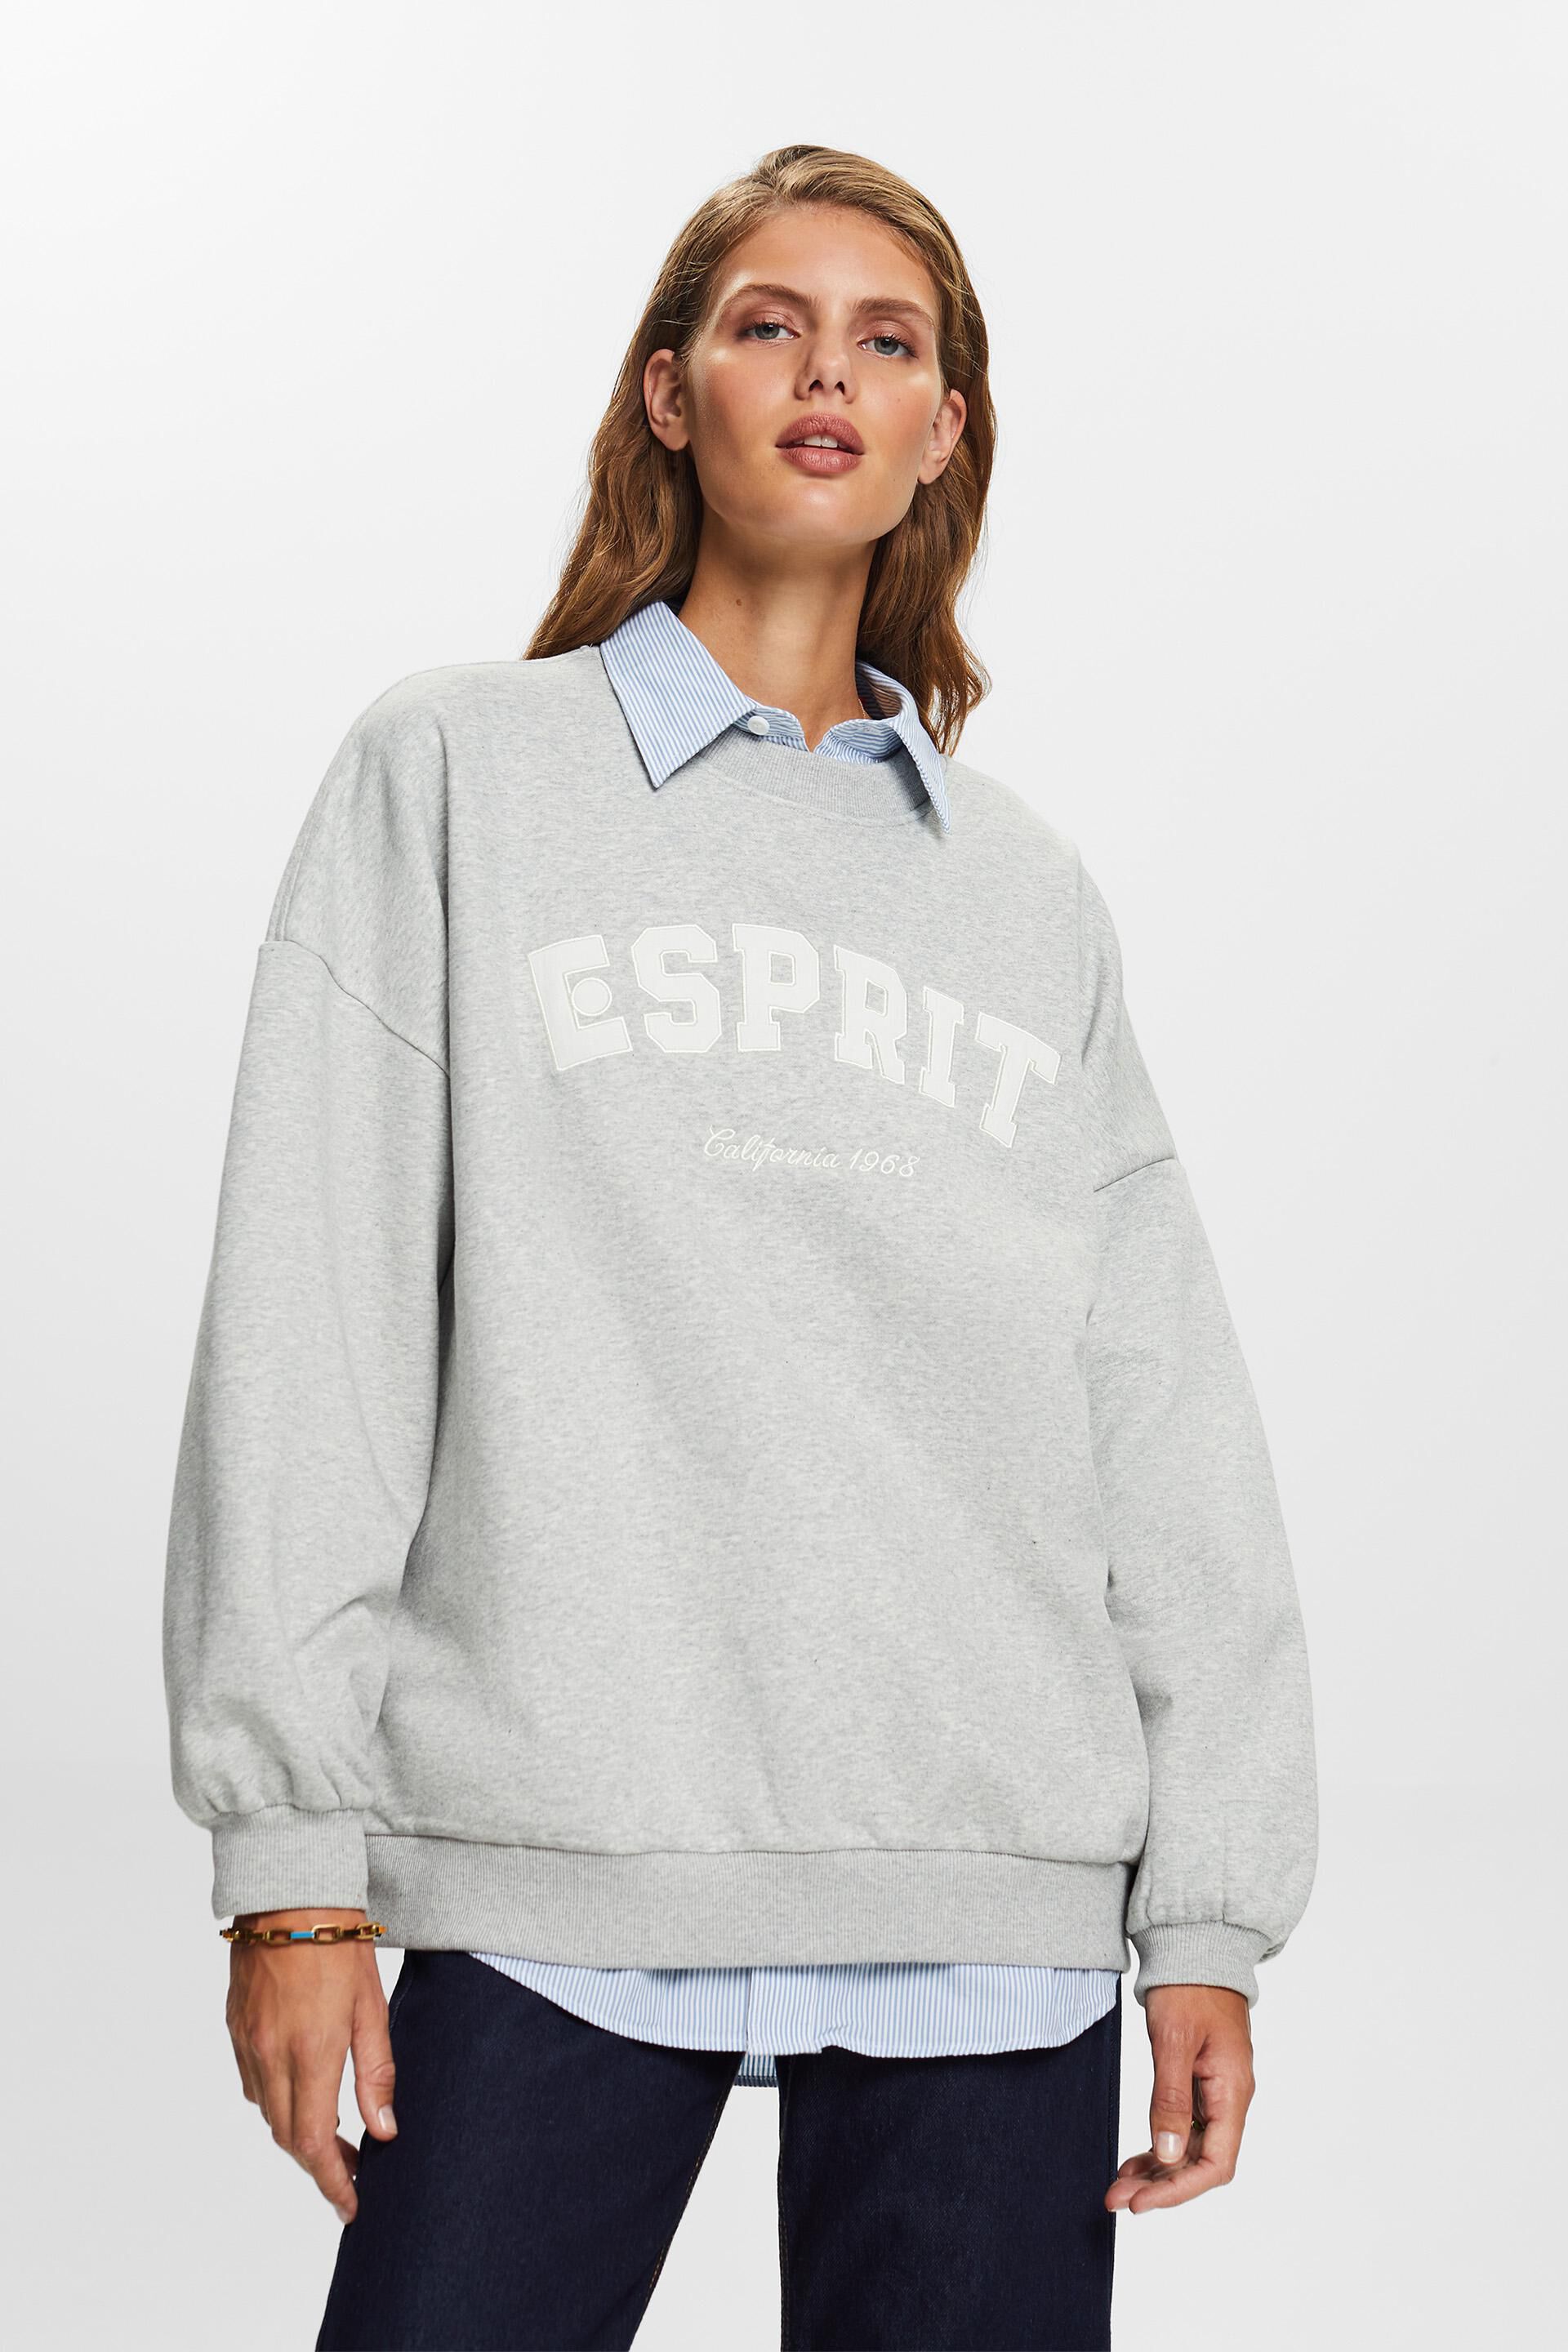 Esprit Sweatshirts